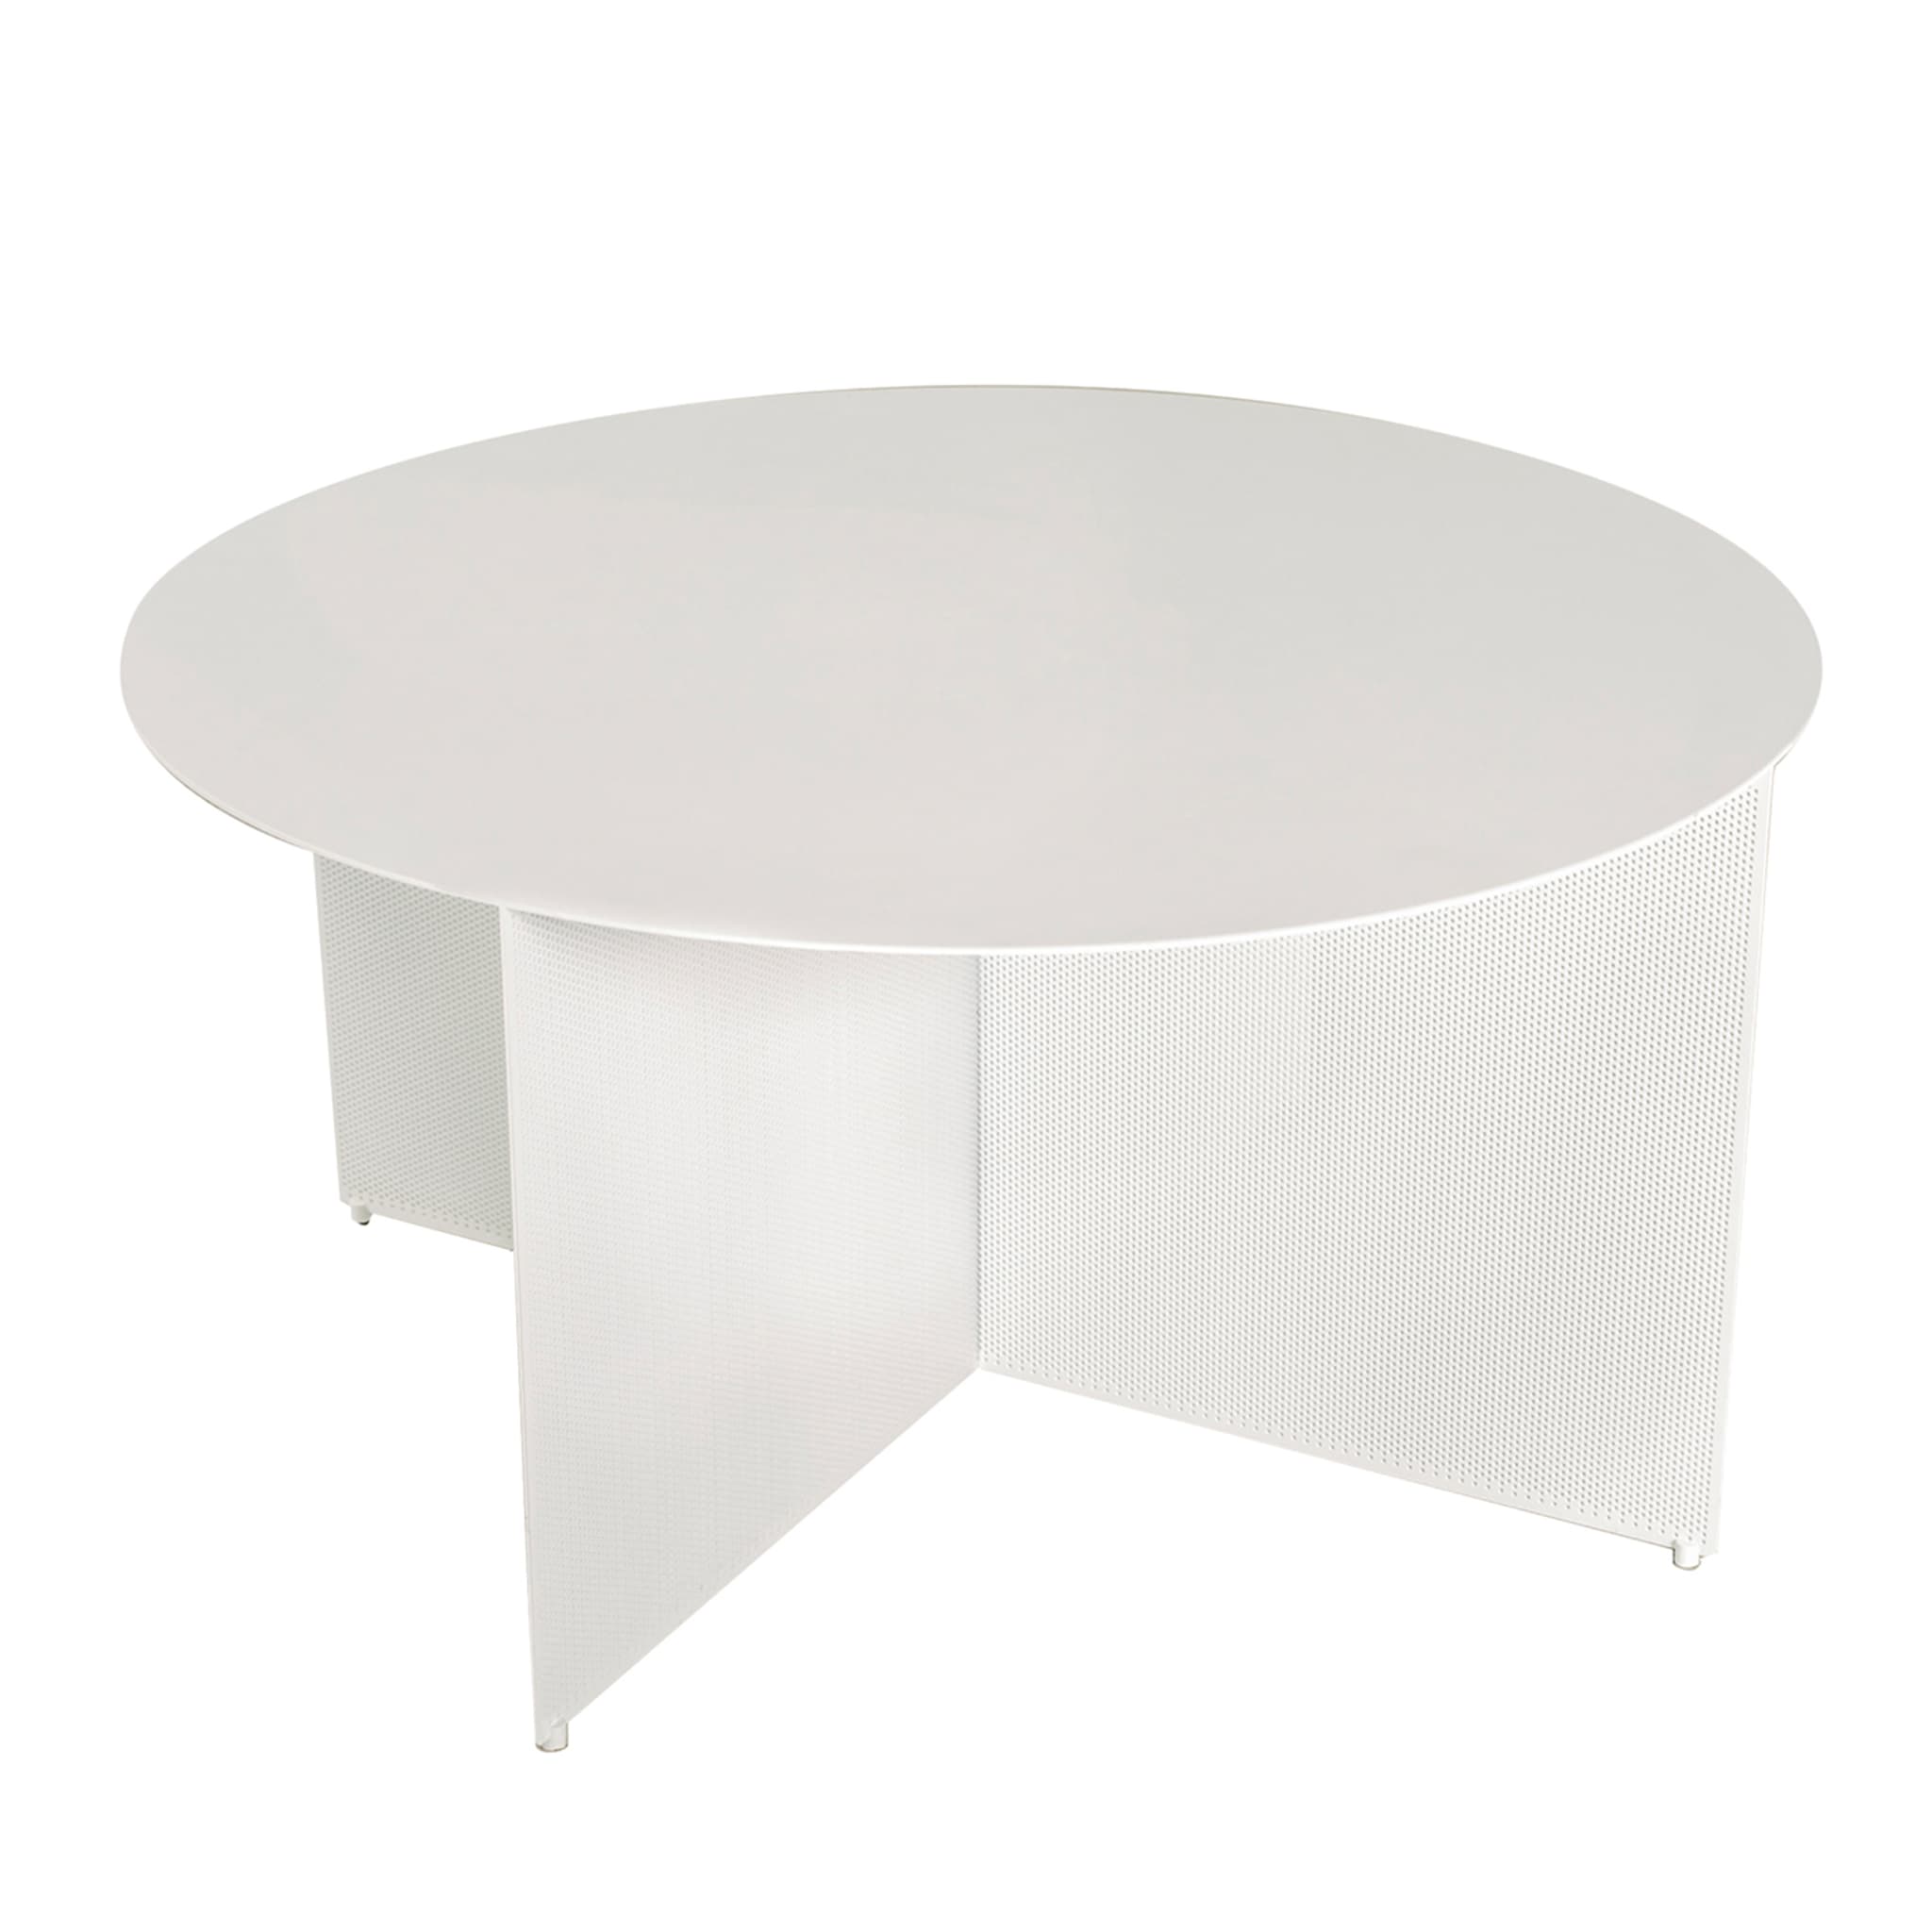 Sezioni White Low Round Coffee Table - Main view